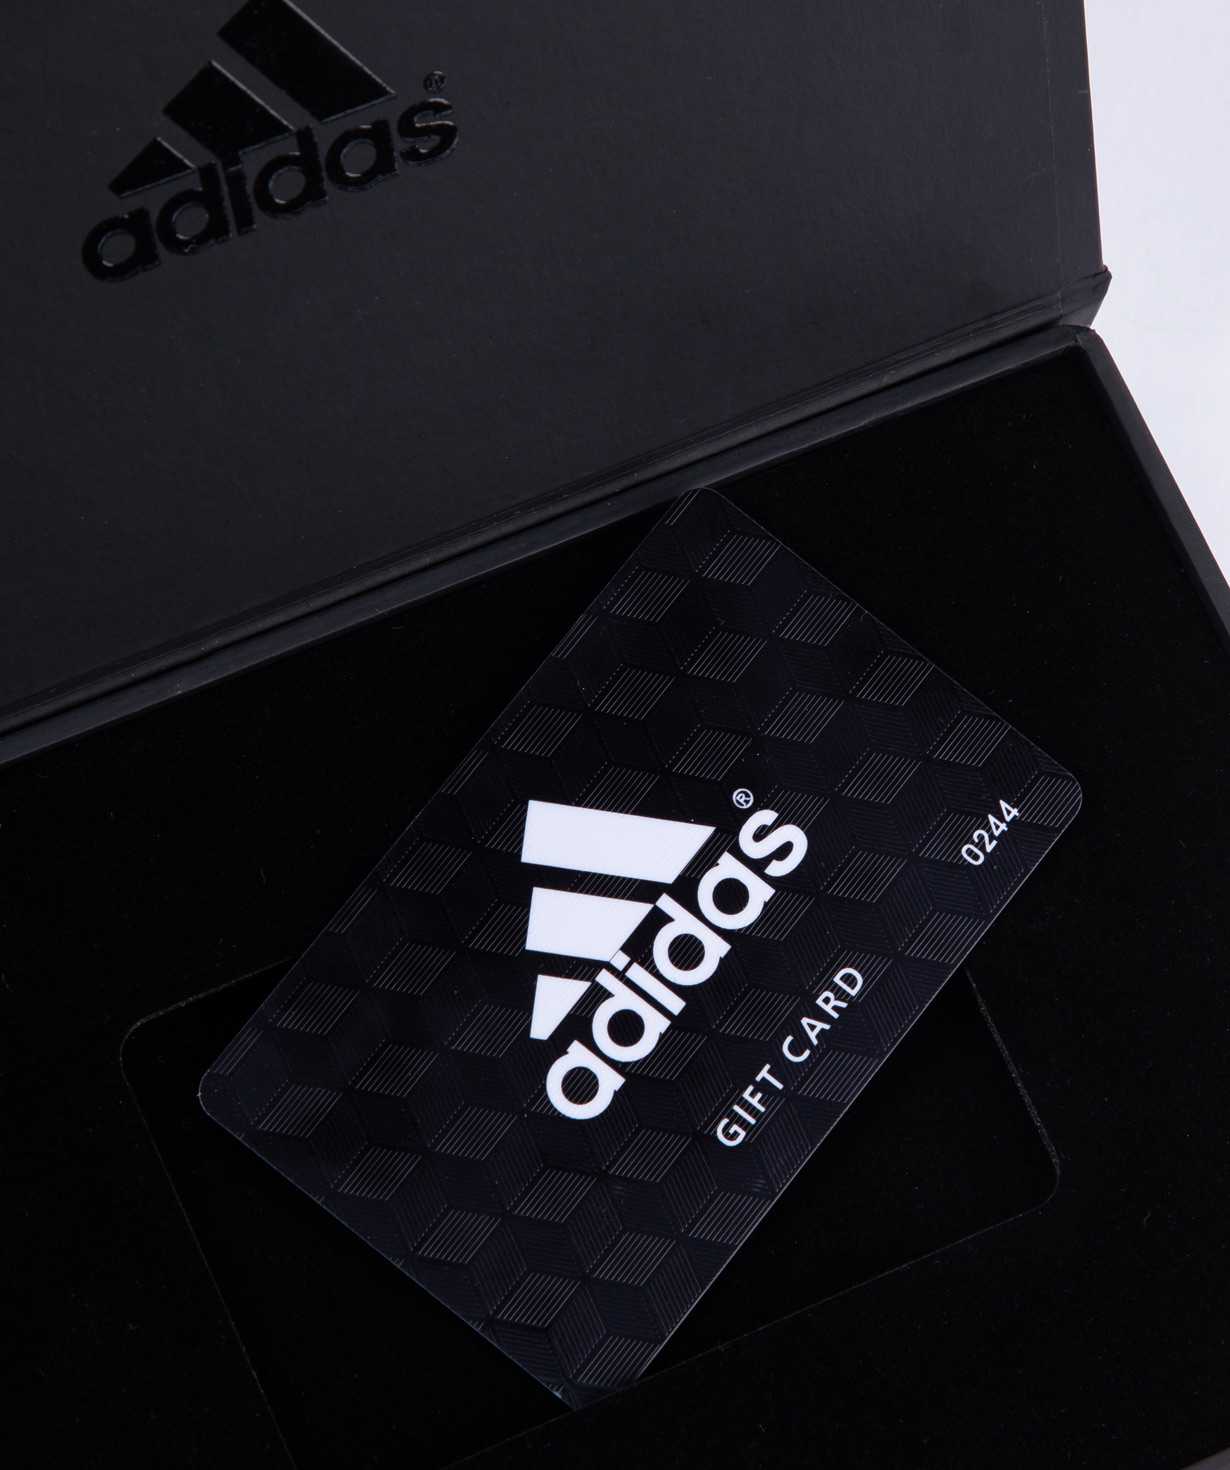 Նվեր-քարտ «Adidas» 30000 դրամ